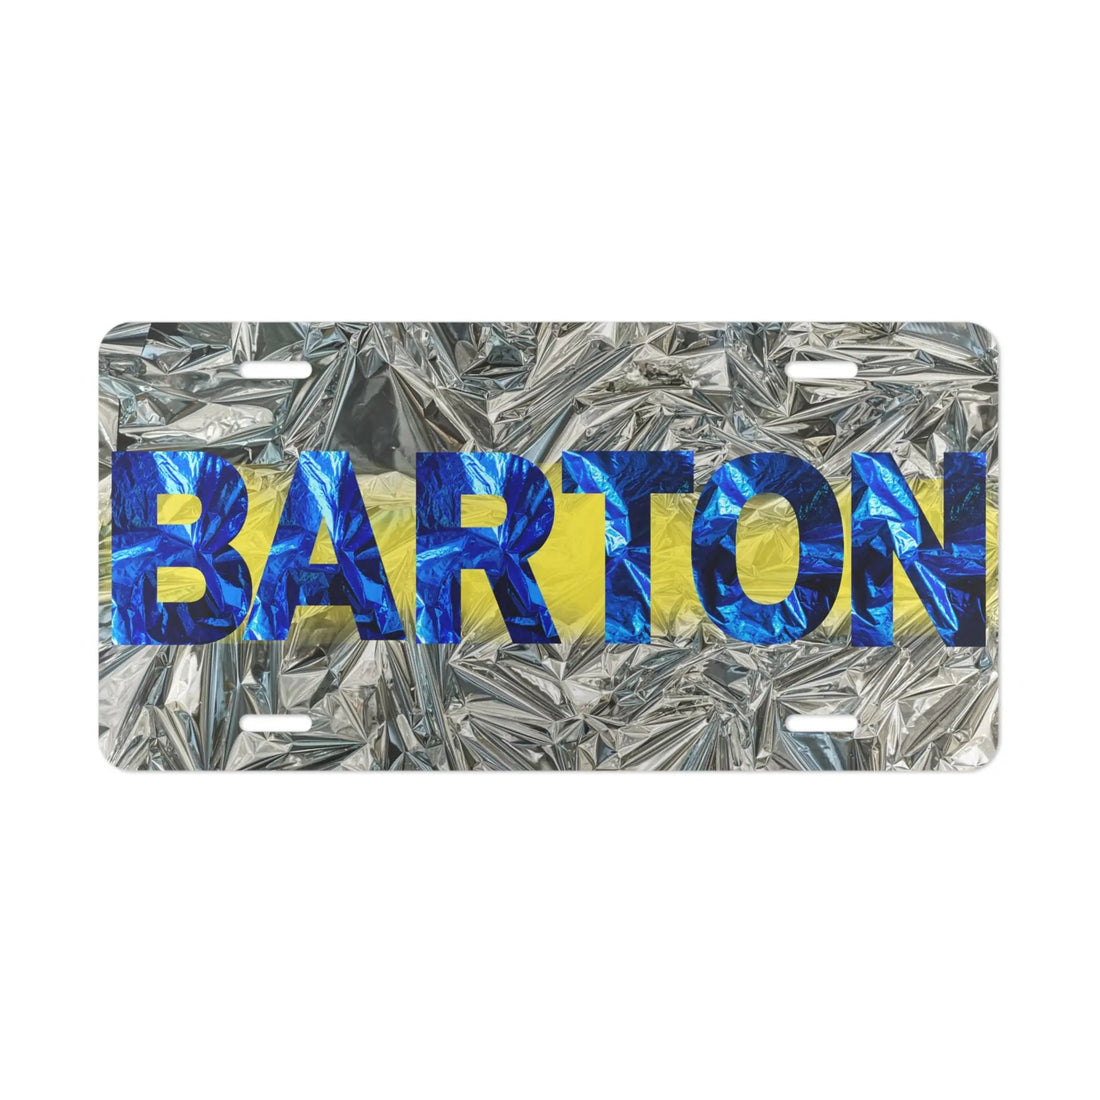 Barton Shine License Plate - Accessories - Positively Sassy - Barton Shine License Plate